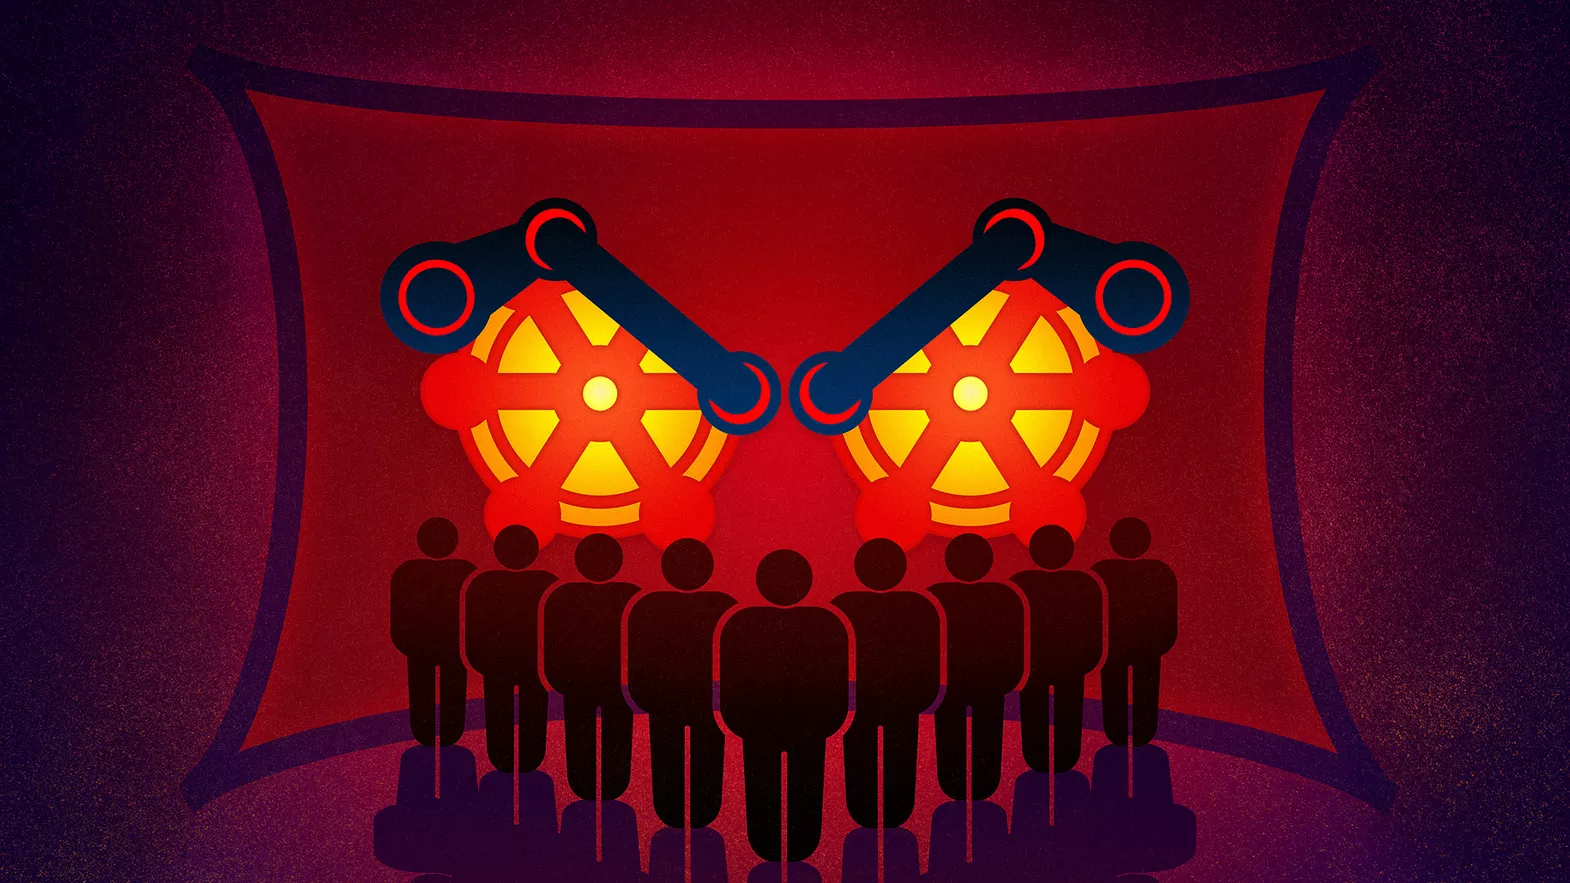 Мнение разработчиков о Steam: максимум доходов и минимум ответственности для Valve - 1